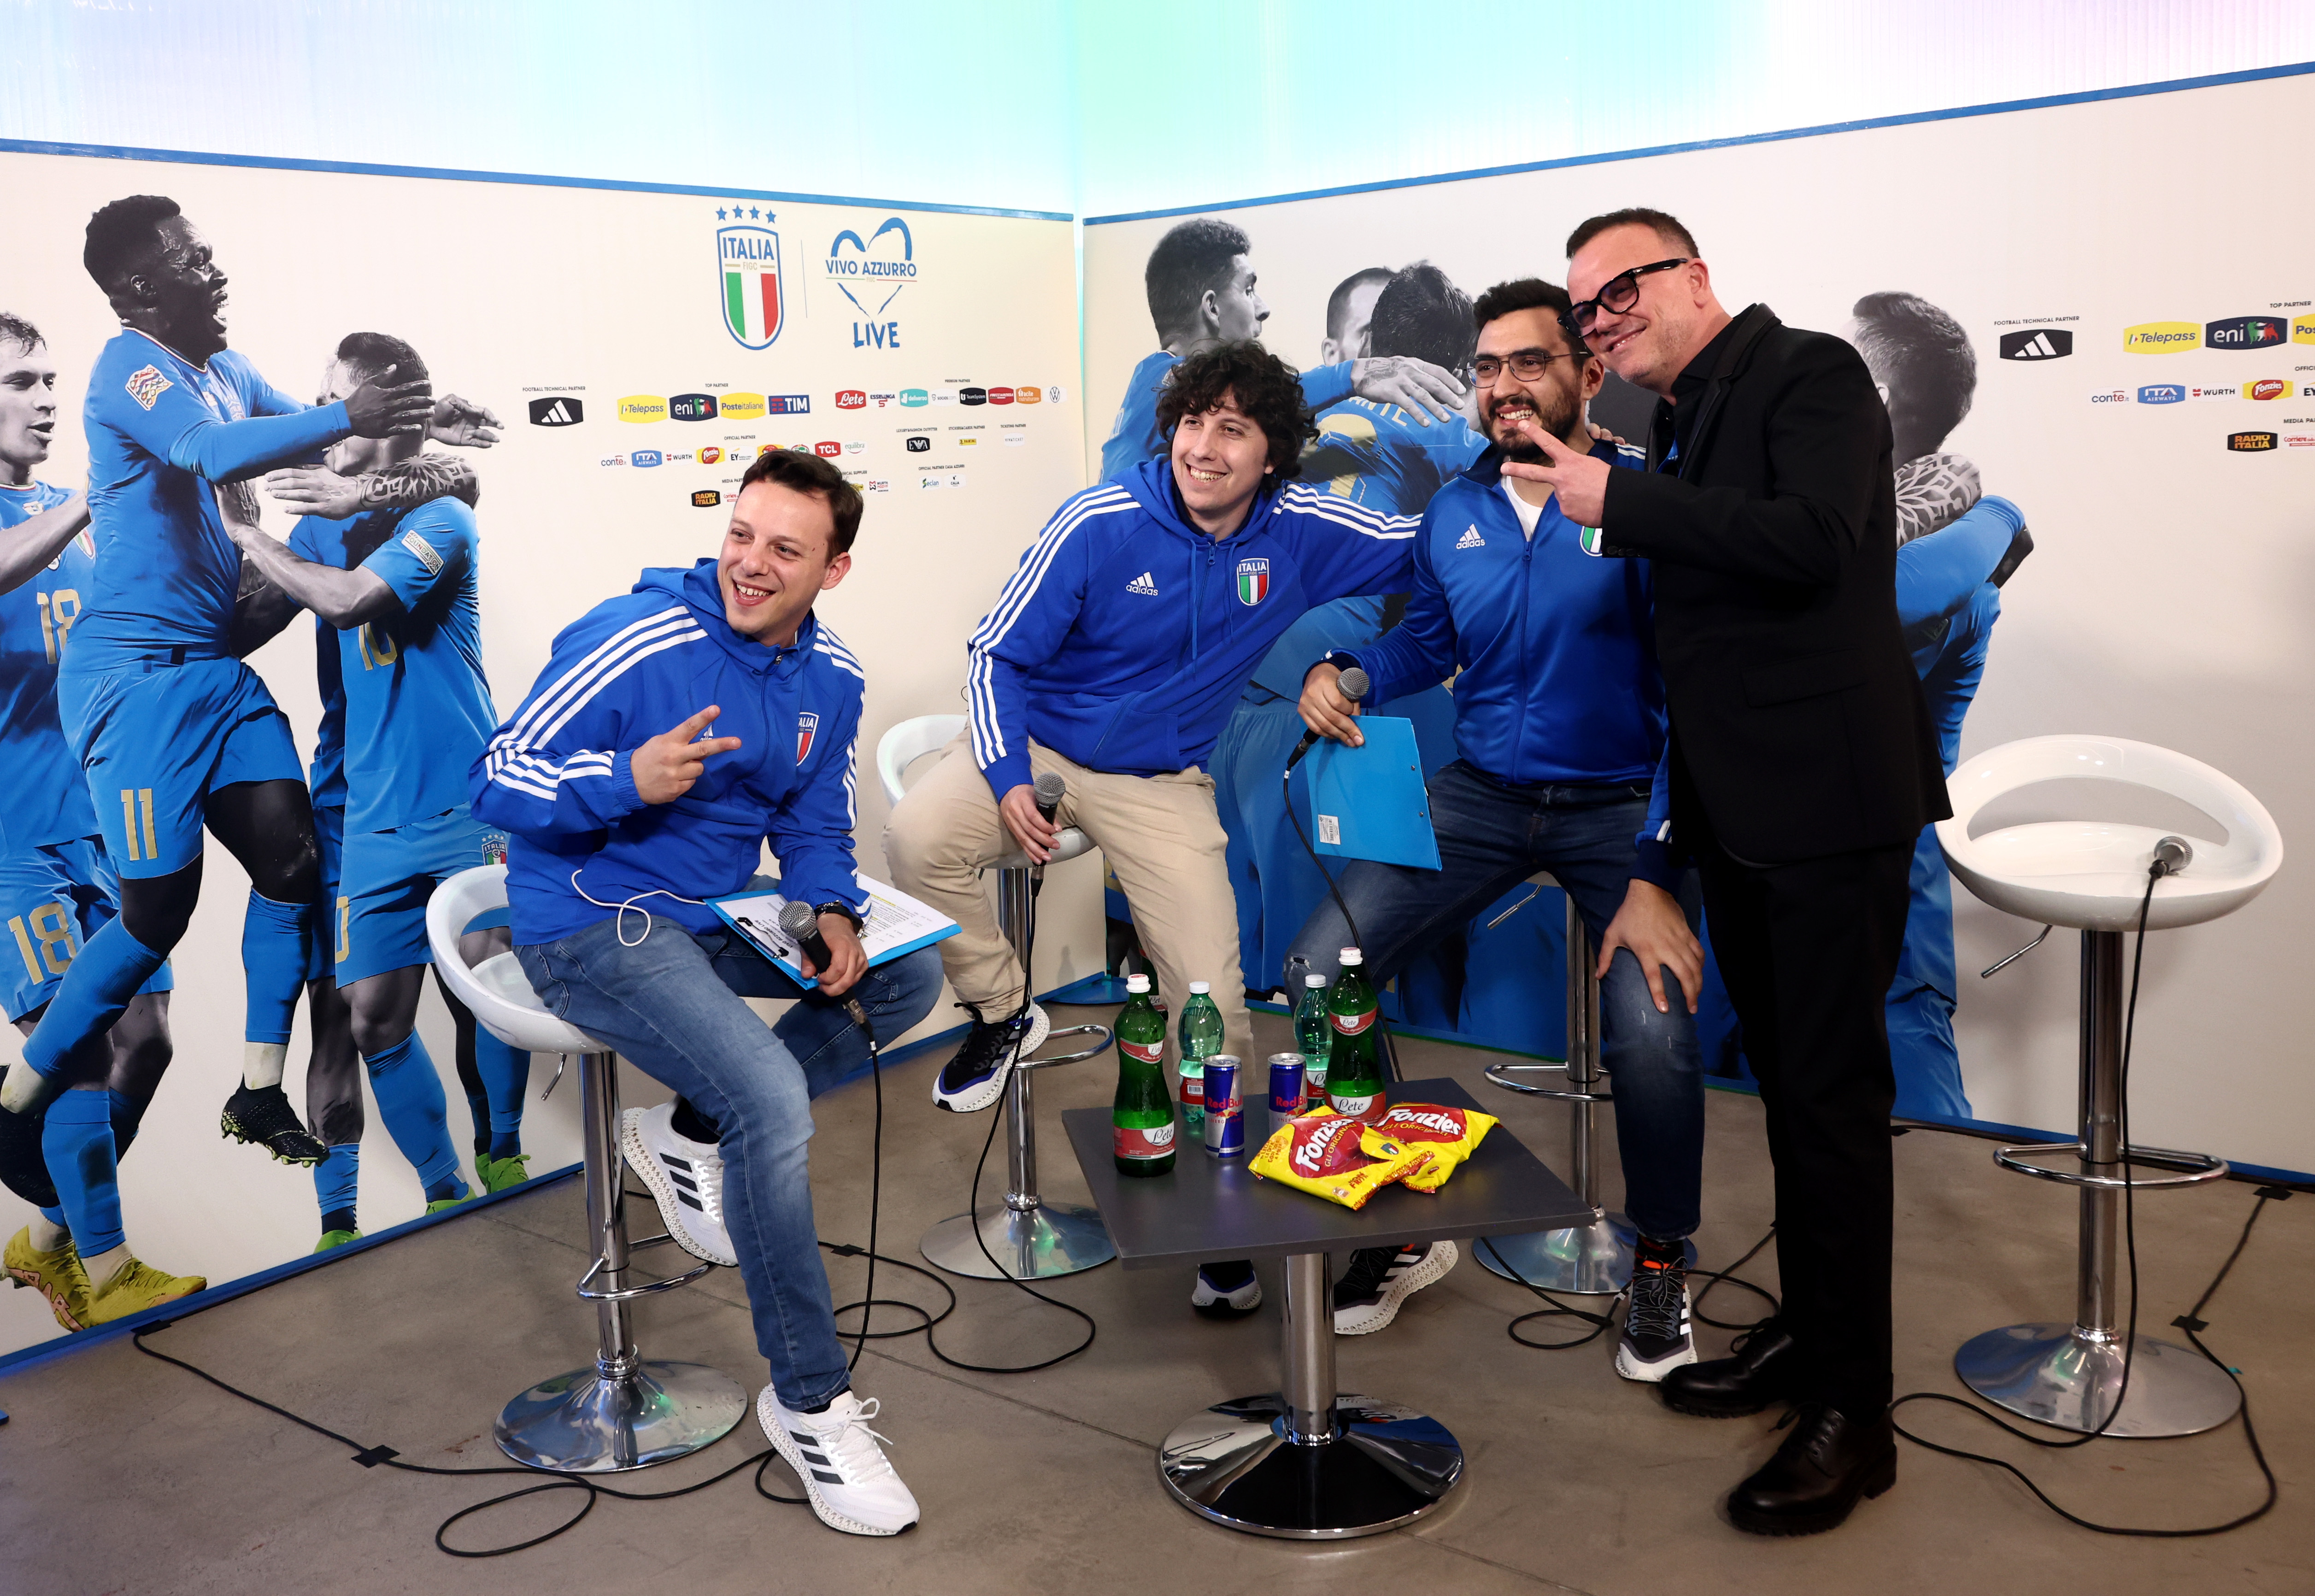 Inghilterra-Italia Under 20 dove vederla: Rai, sito FIGC o Sky? Canale tv,  diretta streaming, formazioni